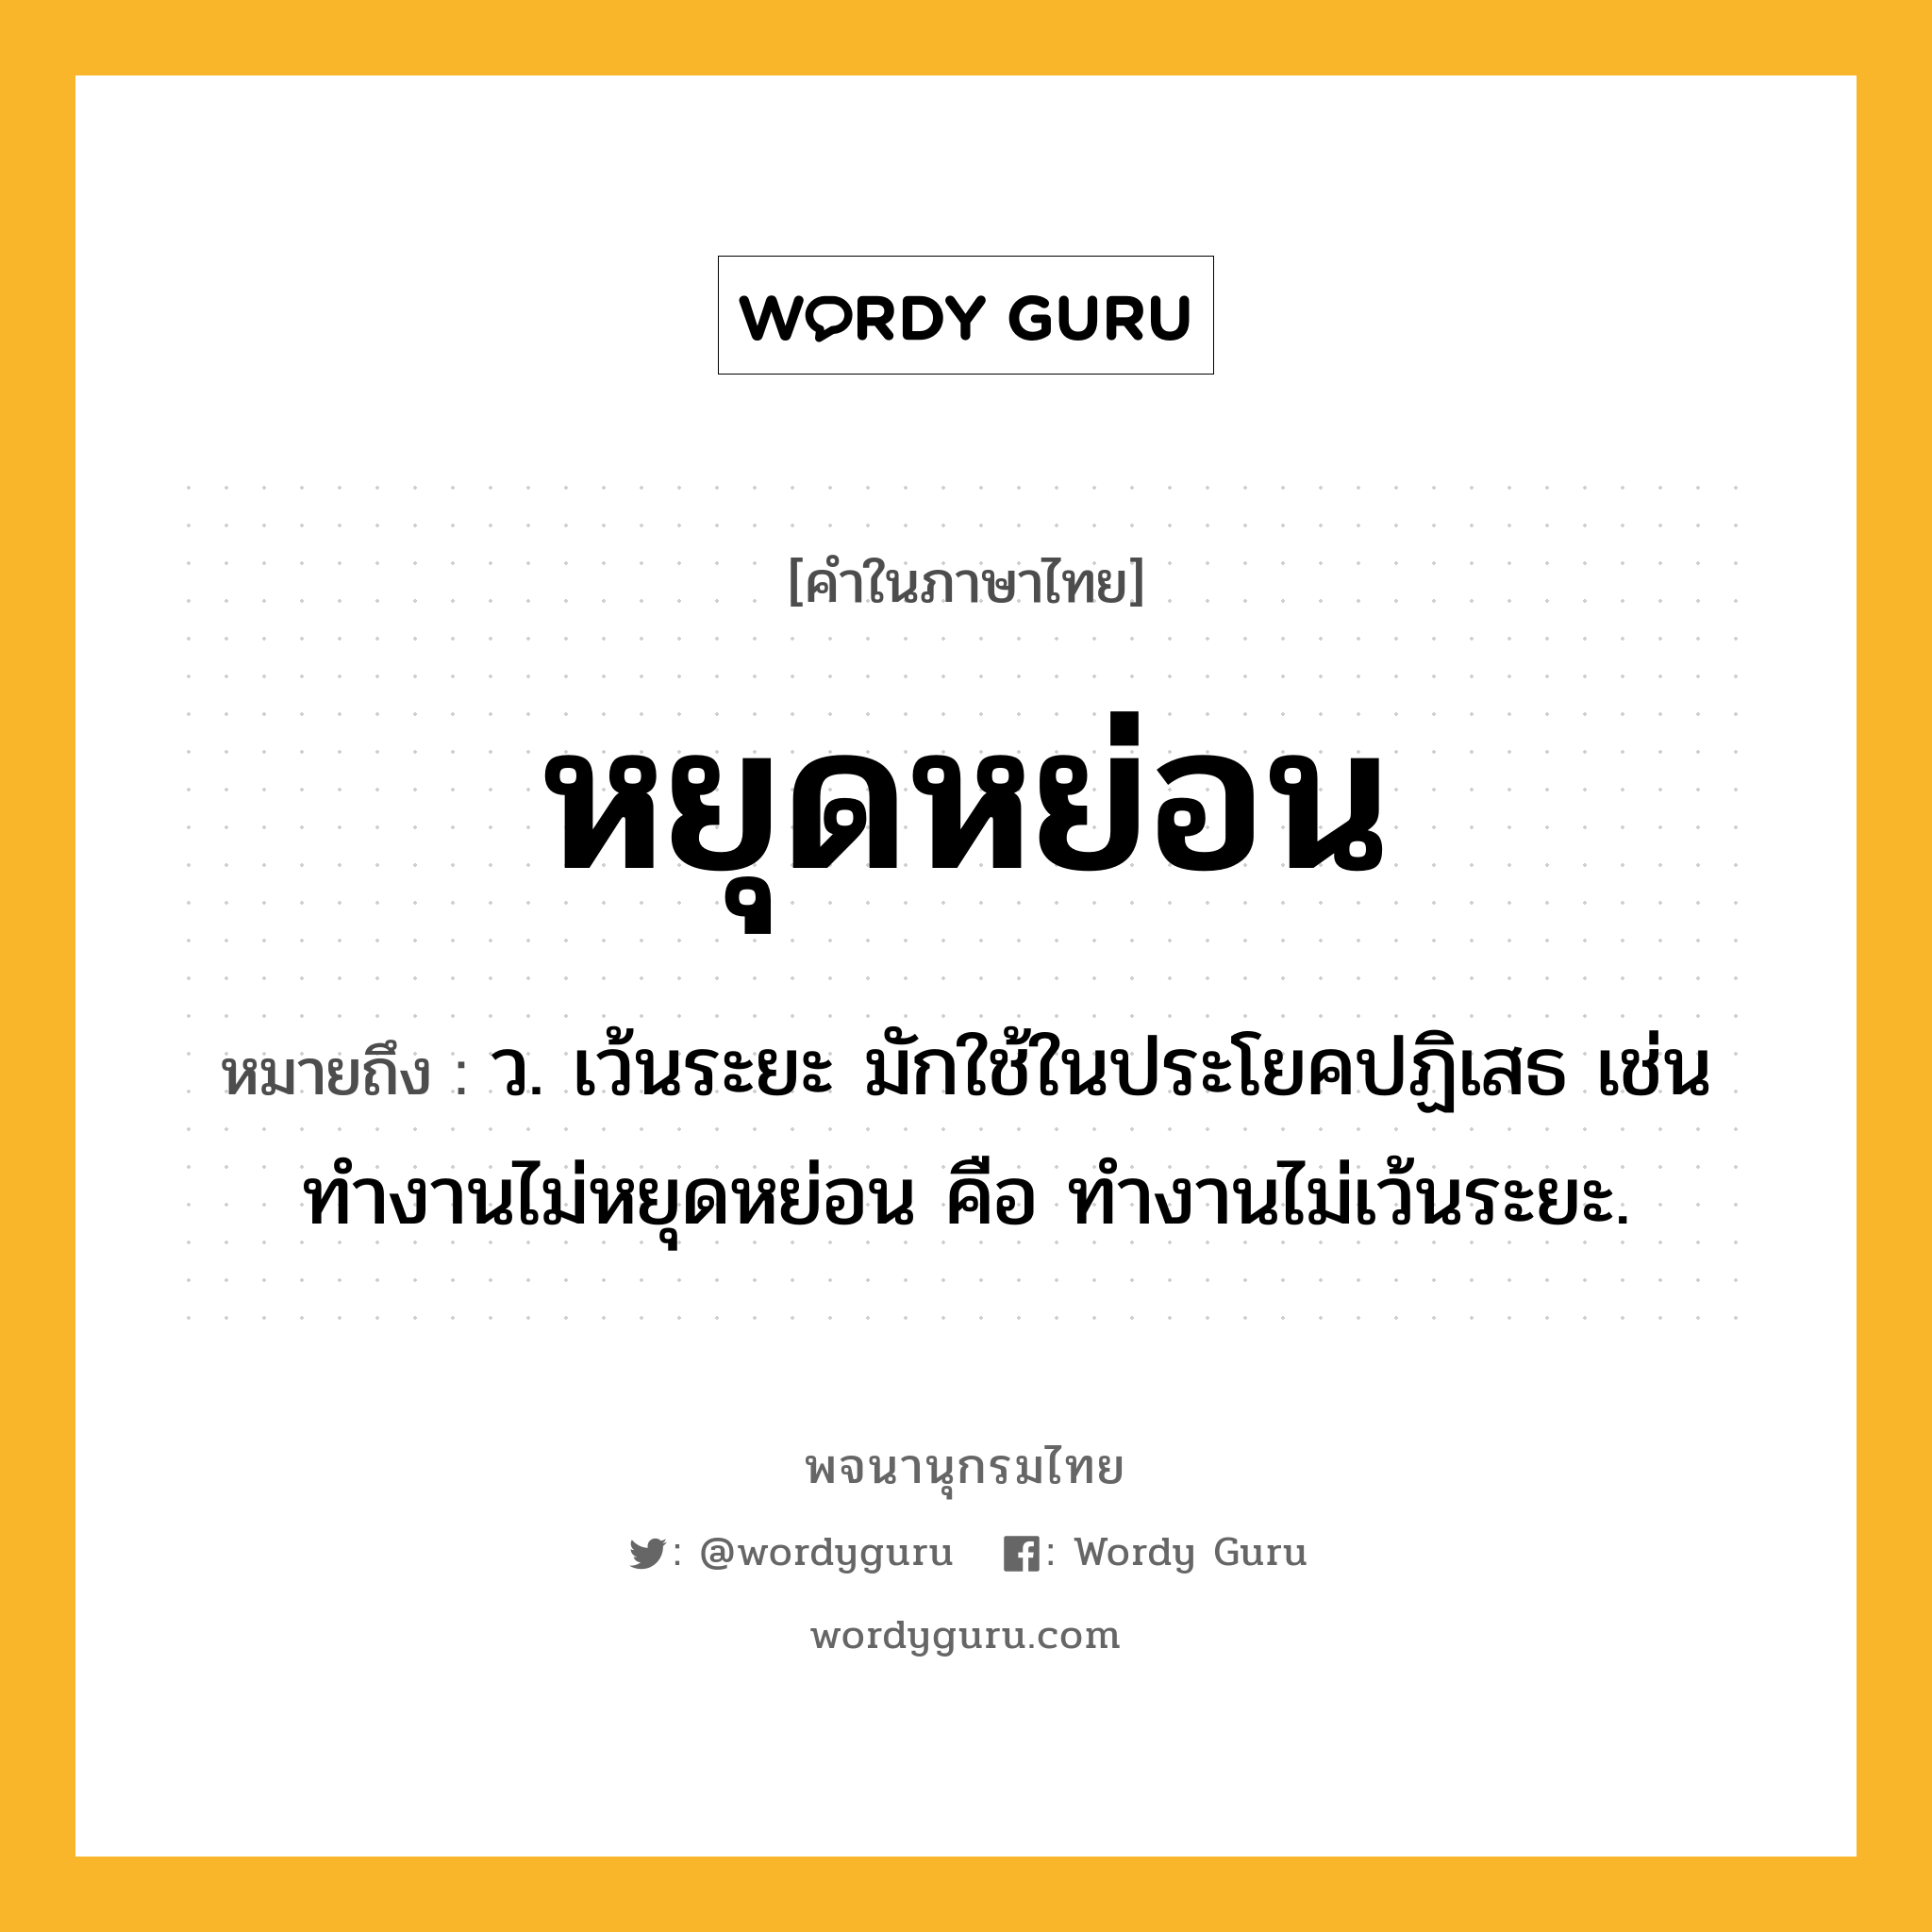 หยุดหย่อน ความหมาย หมายถึงอะไร?, คำในภาษาไทย หยุดหย่อน หมายถึง ว. เว้นระยะ มักใช้ในประโยคปฏิเสธ เช่น ทํางานไม่หยุดหย่อน คือ ทํางานไม่เว้นระยะ.